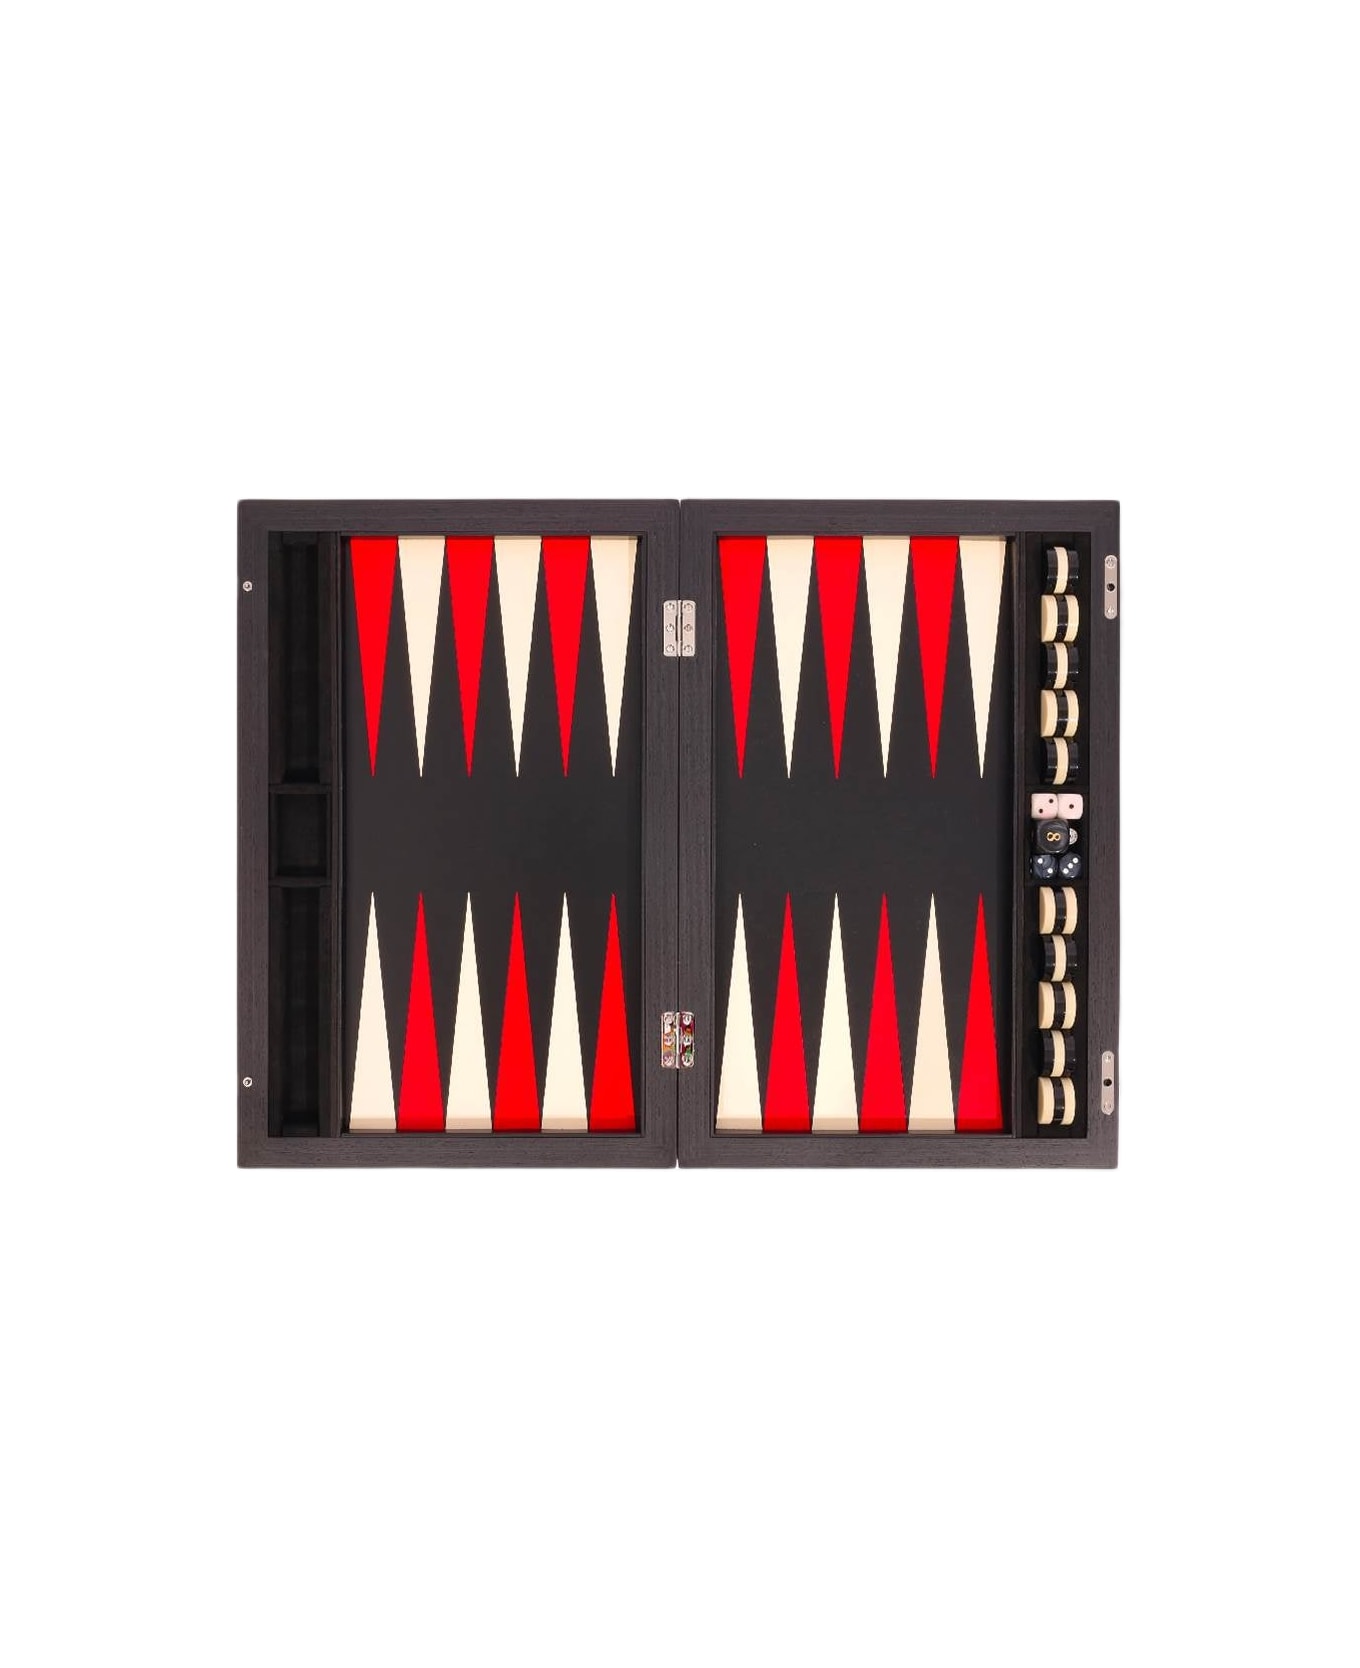 Larusmiani Carbon Fiber Backgammon Set Game - Black